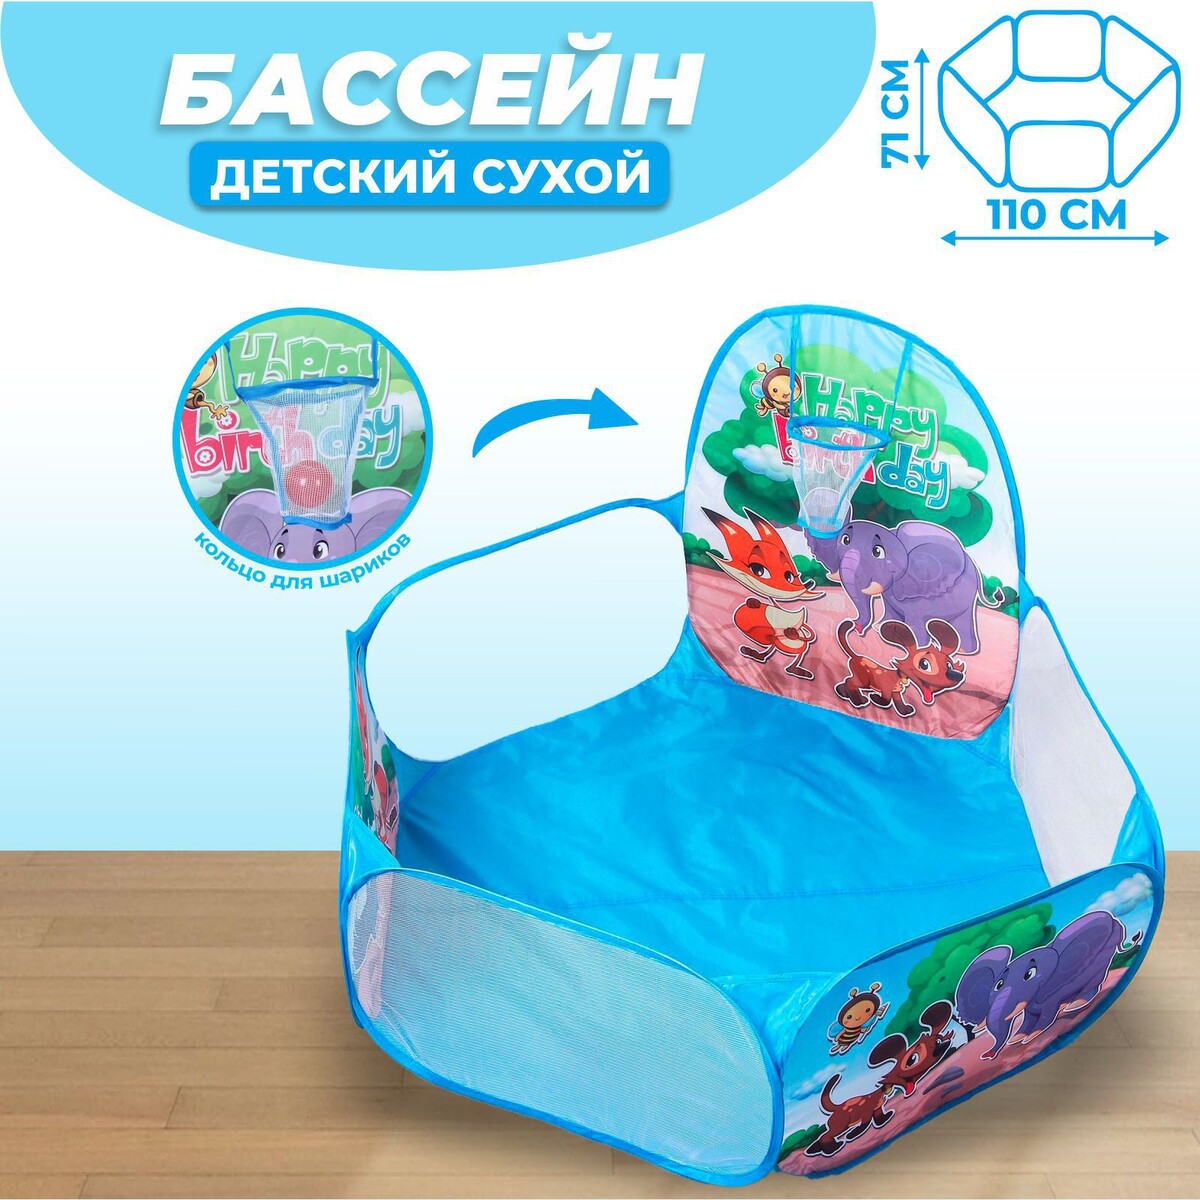 Палатка детская игровая - сухой бассейн для шариков манеж сухой бассейн для шариков баскетбол малый